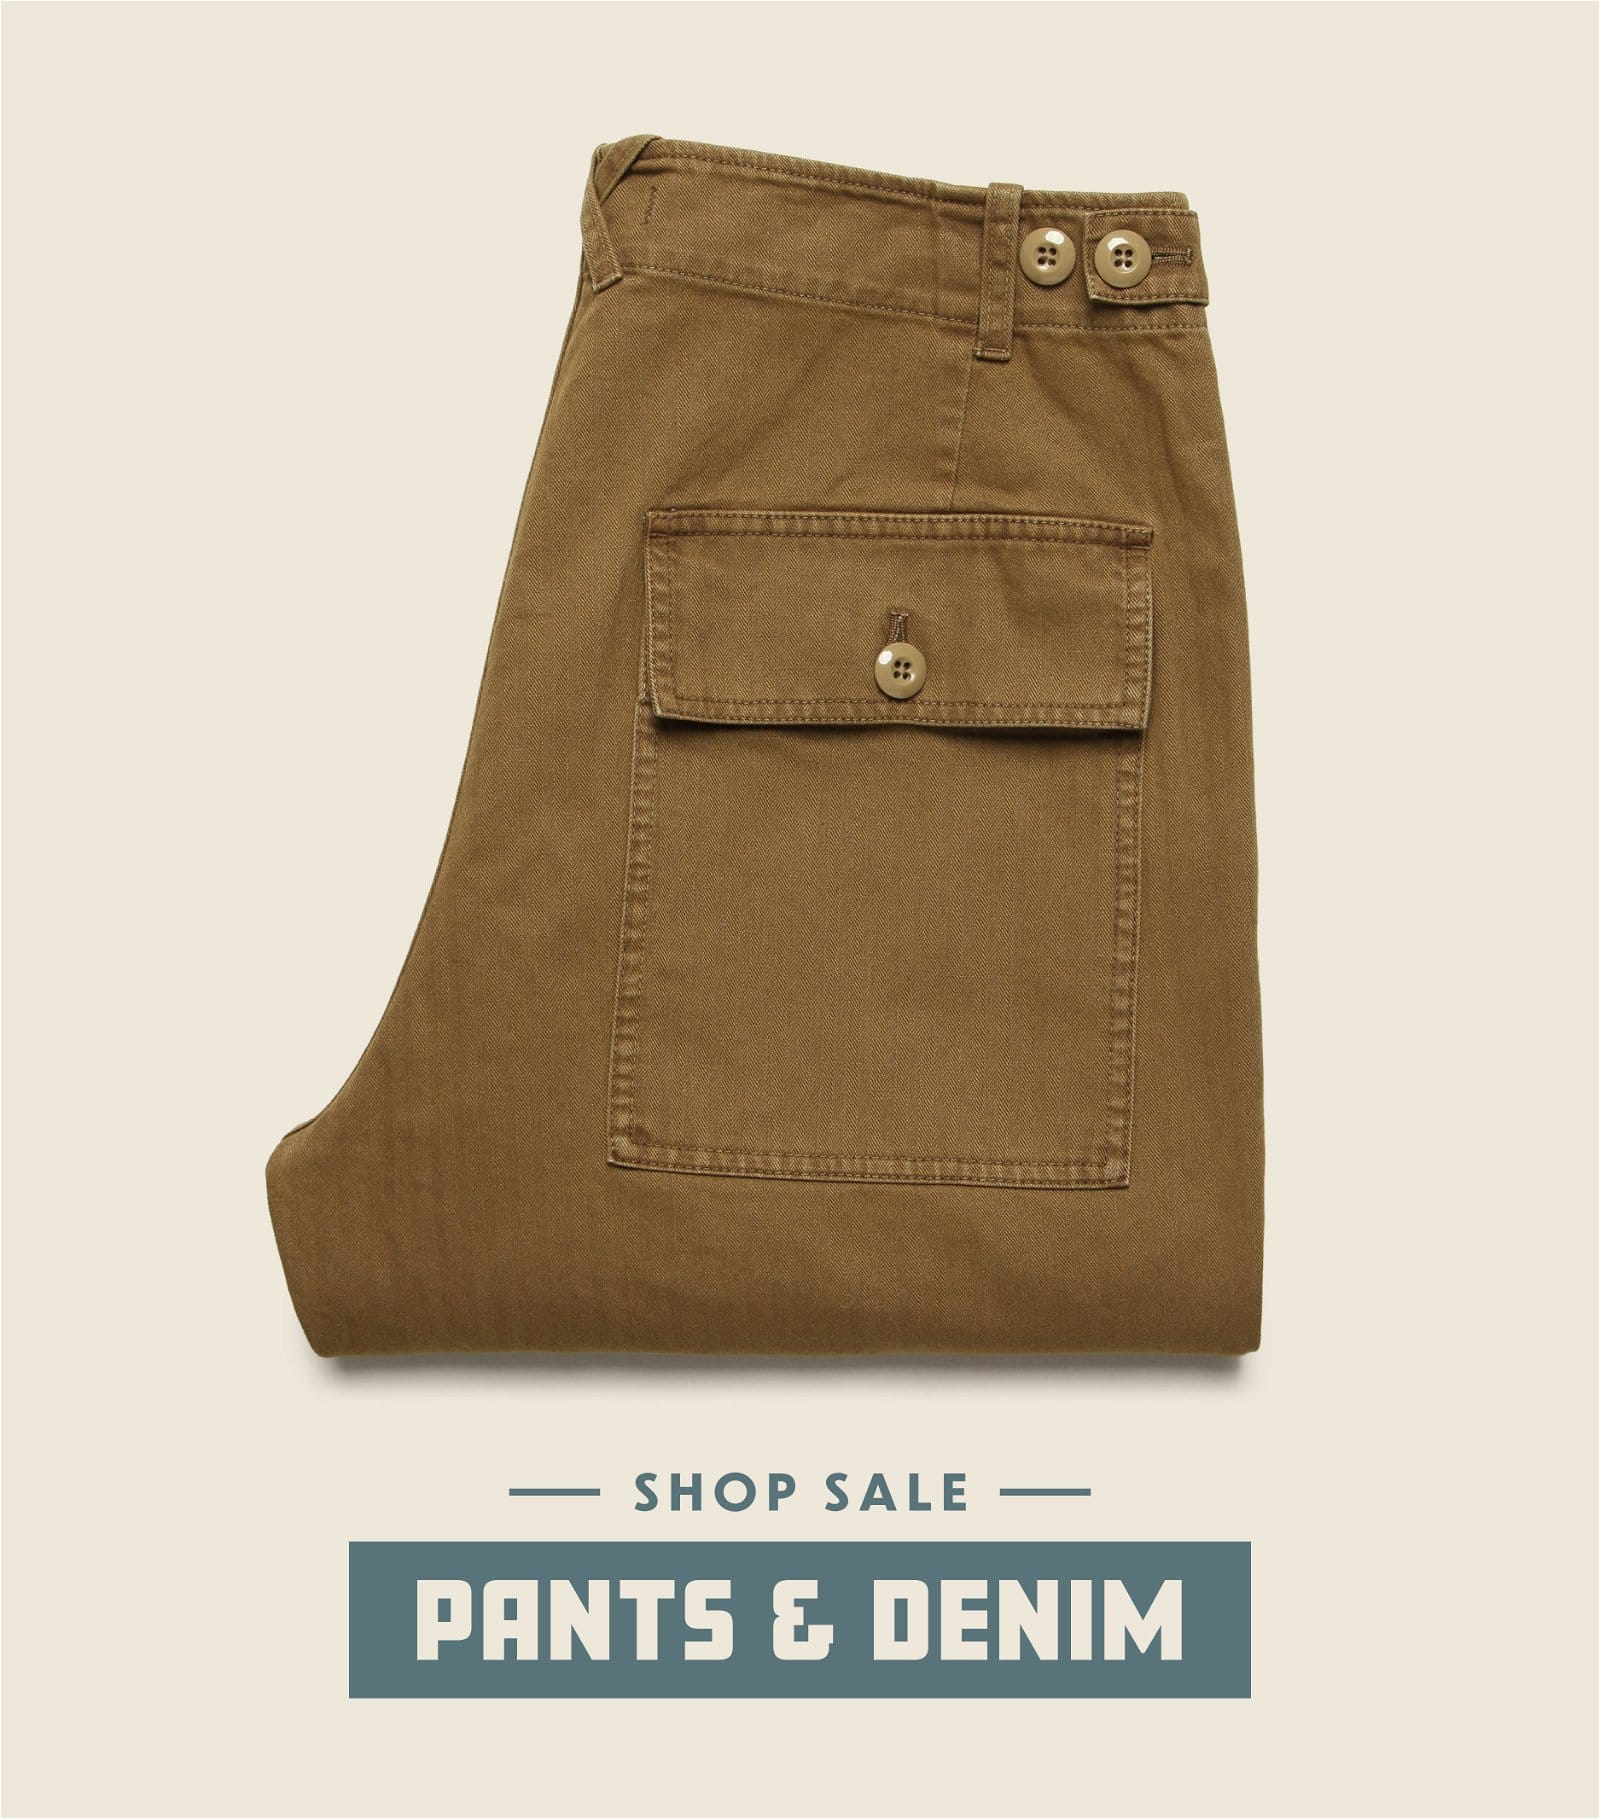 Sale Pants